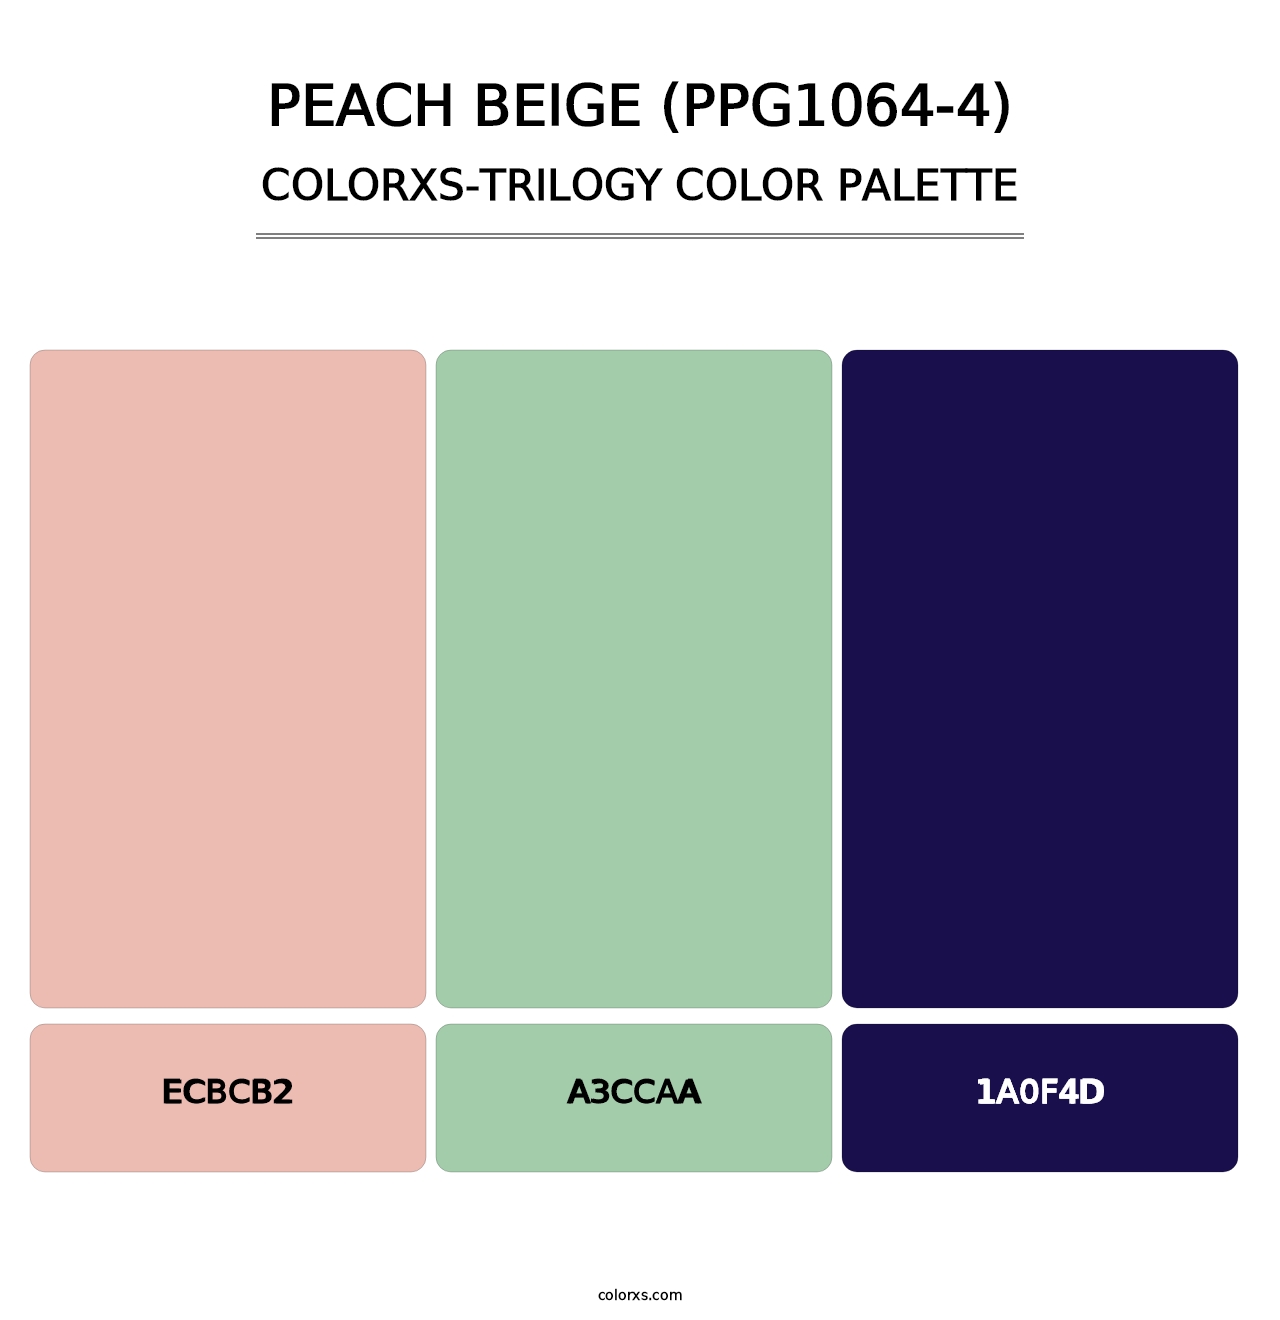 Peach Beige (PPG1064-4) - Colorxs Trilogy Palette